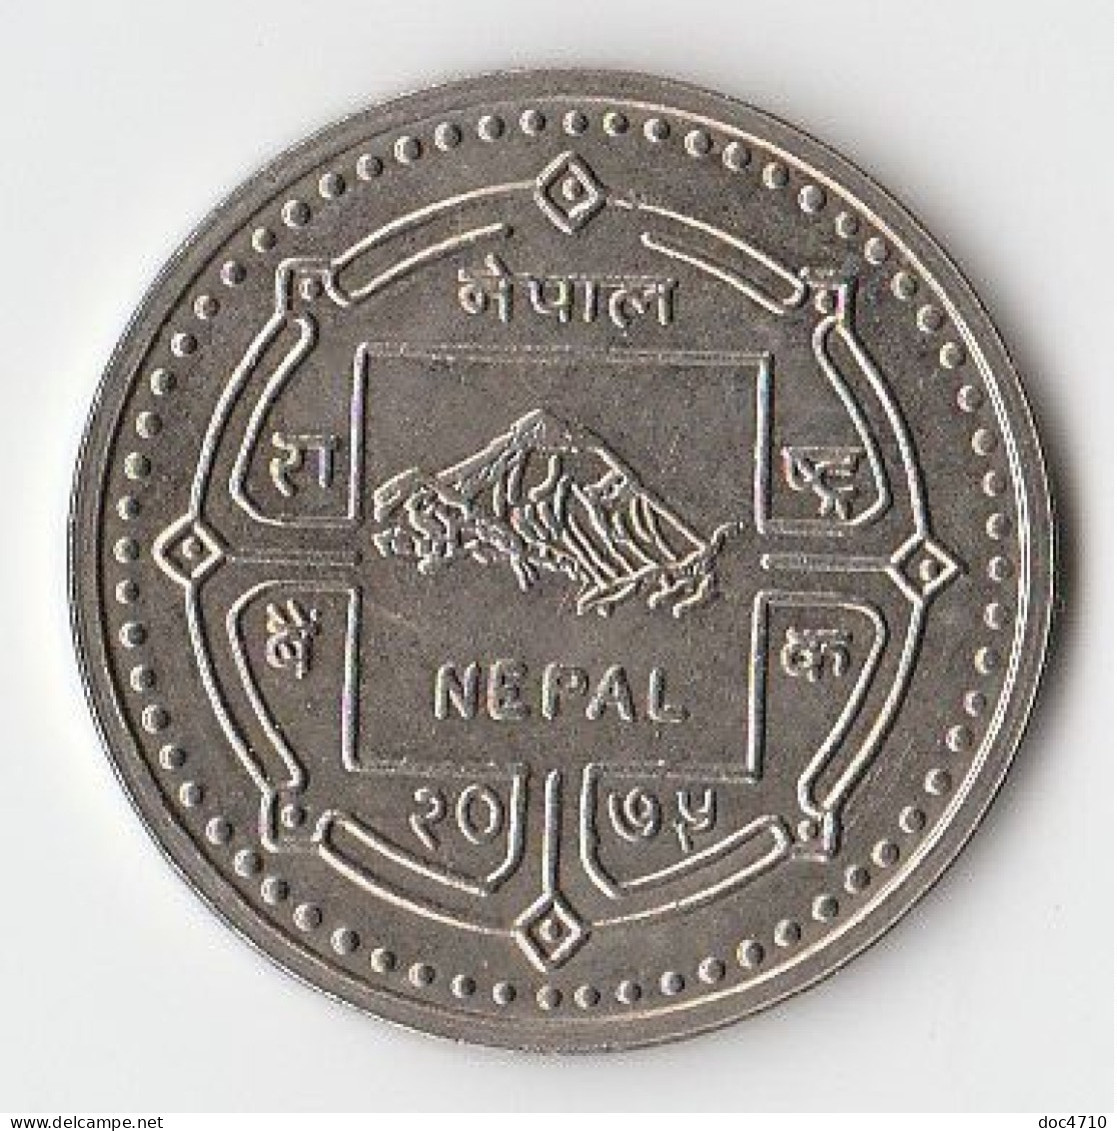 Nepal 100 Rupees 2018-VS2075, Silver Jubilee Of SEBON, KM#New, AUnc - Nepal